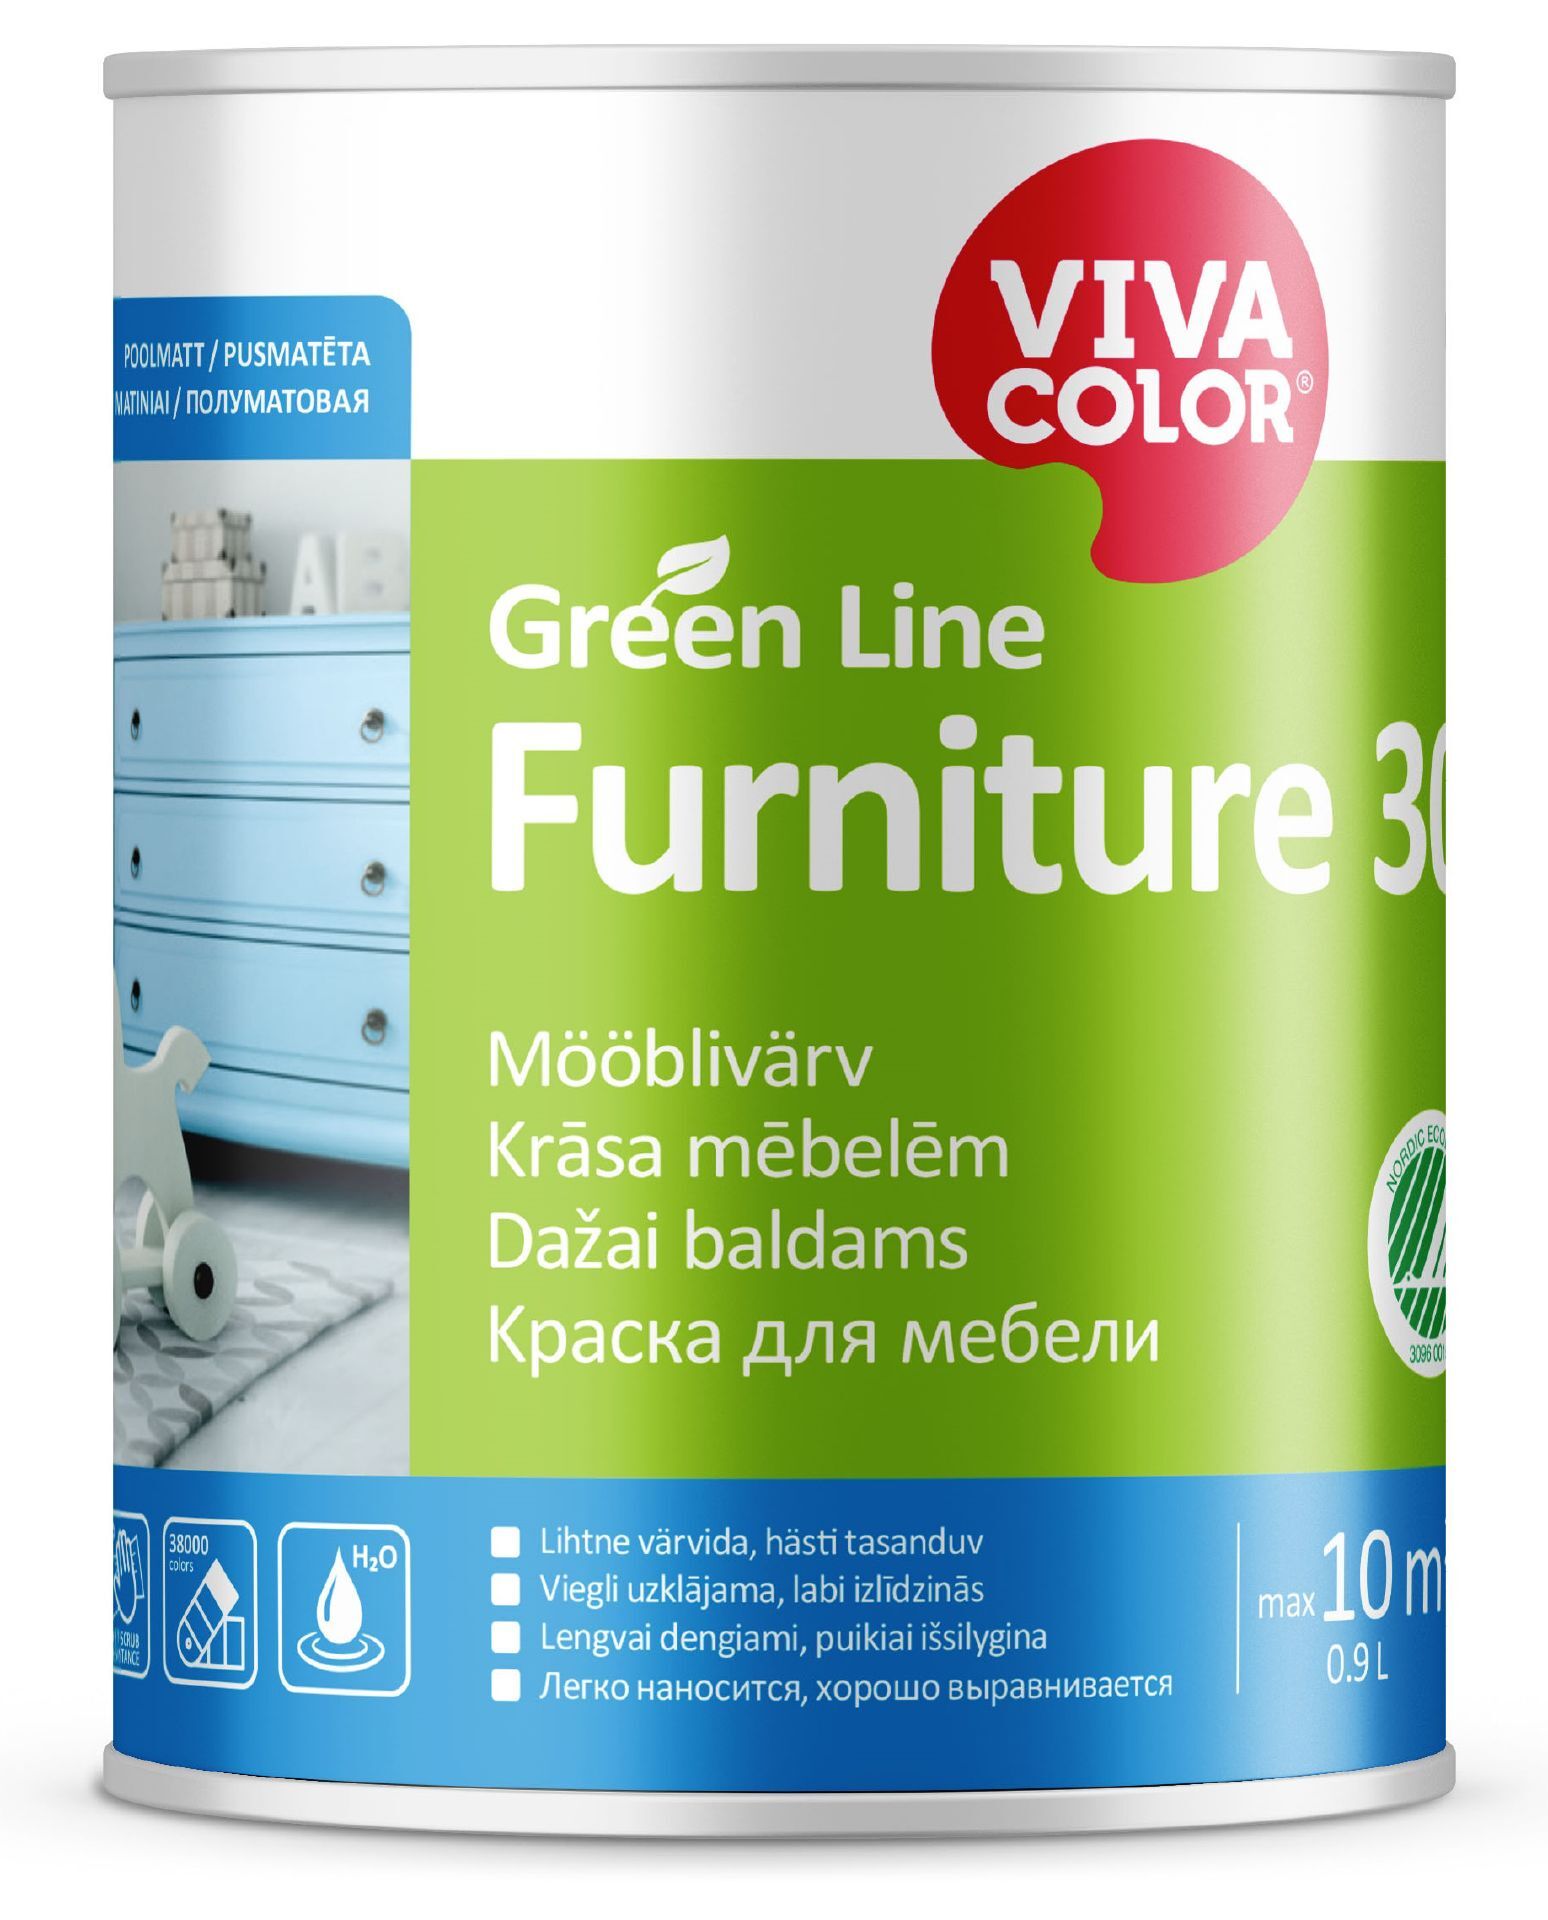 vivacolor_green-line_furniture30.jpg